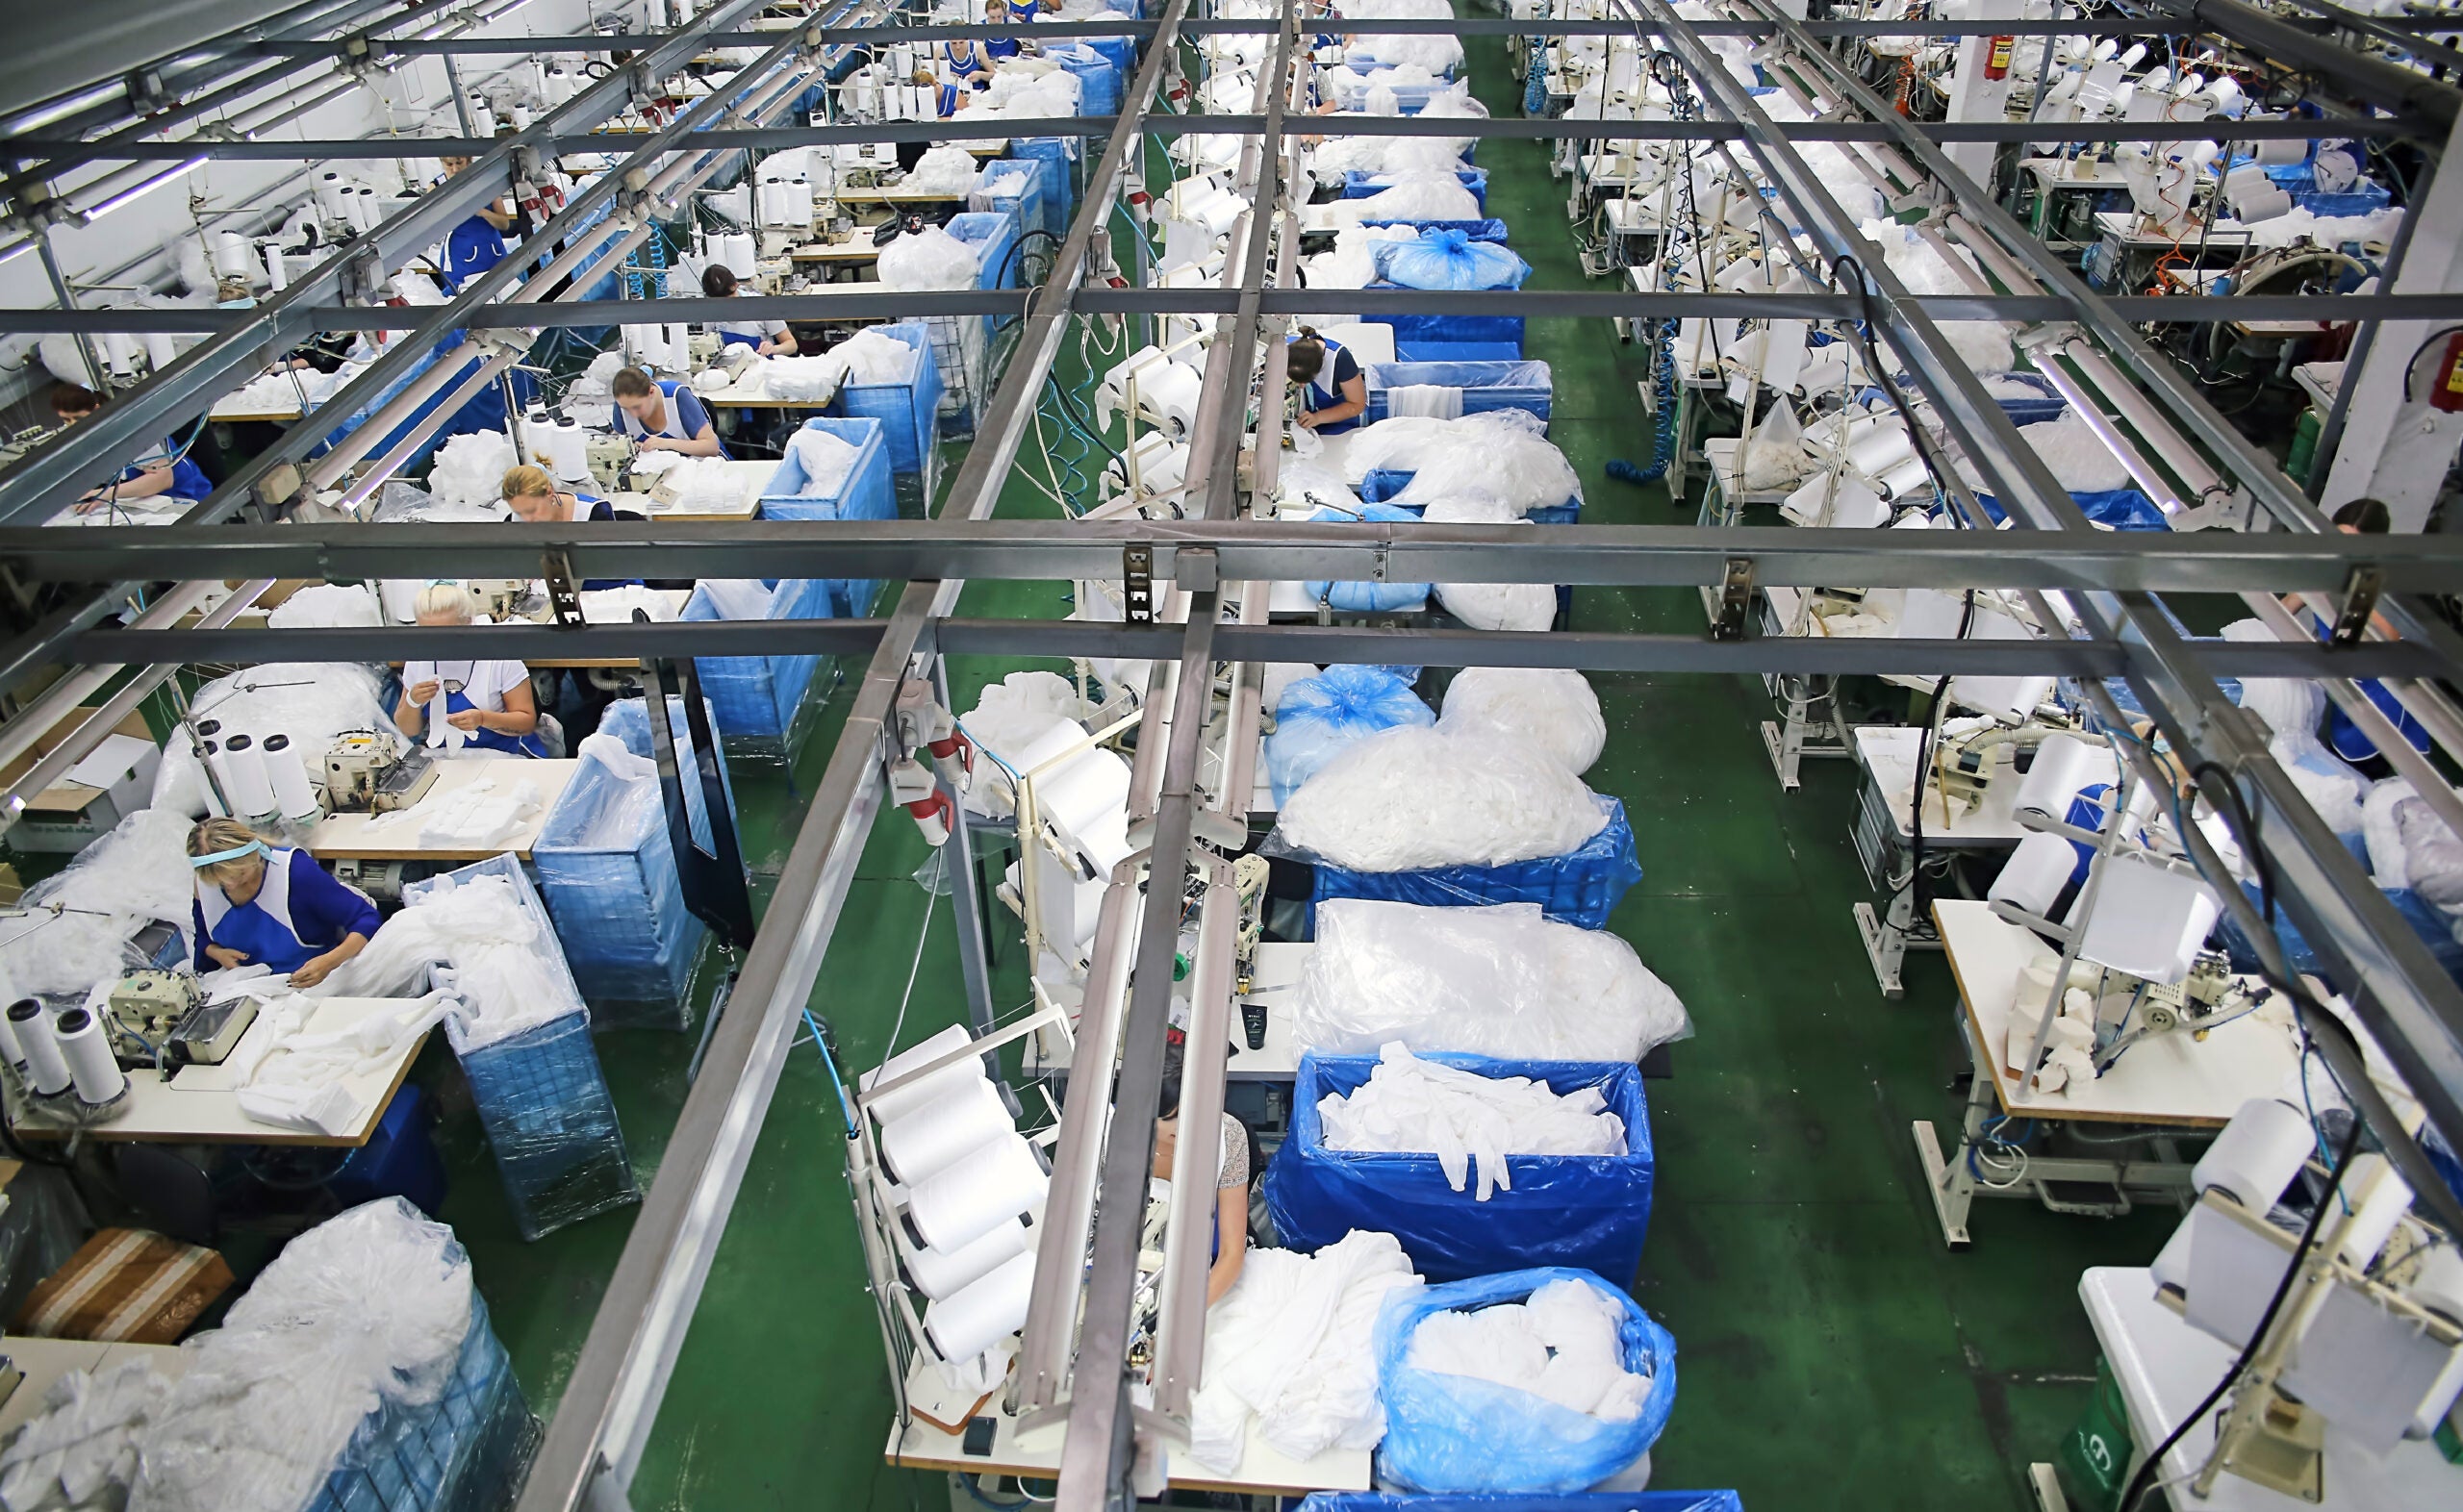 EU textile plants face new requirements under emissions law